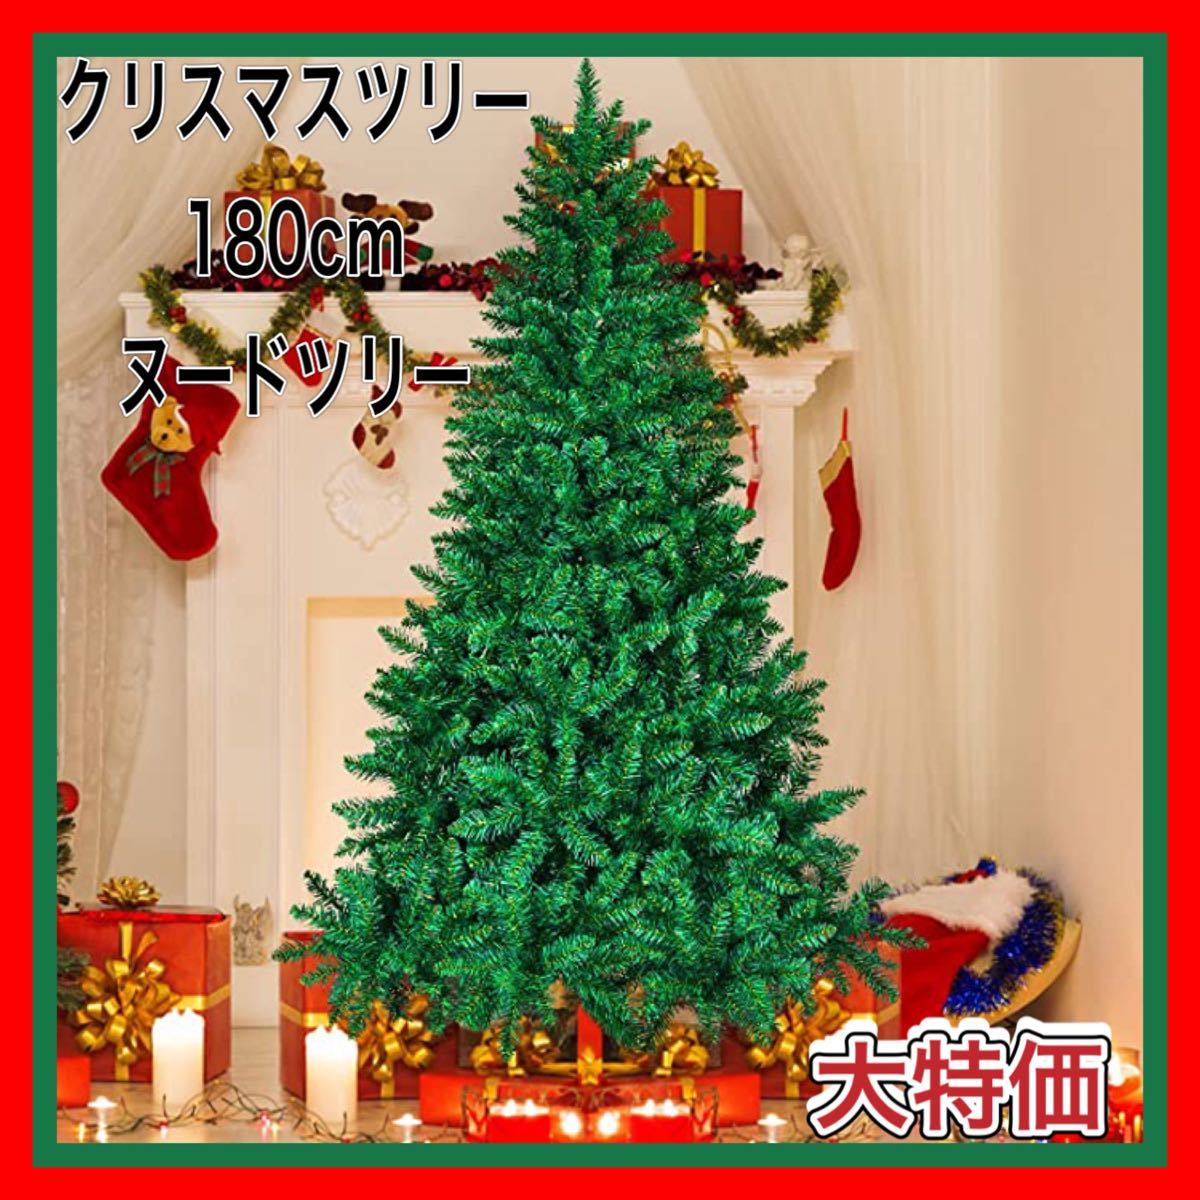 【大特価】クリスマスツリー 枝大幅増量タイプ 180cm グリーン ヌードツリー 